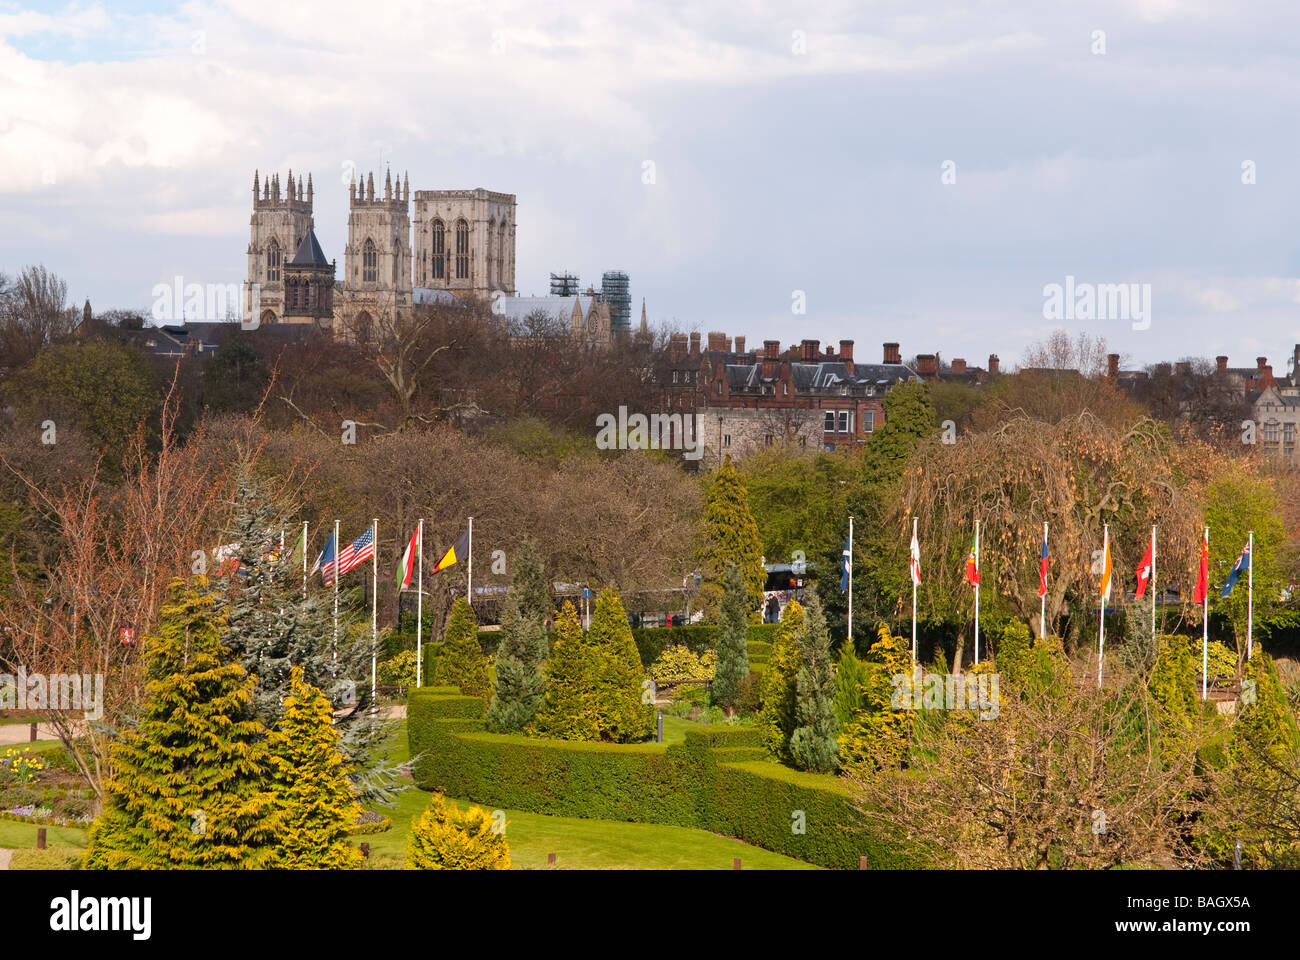 Ein Blick in Richtung York Minster Kathedrale in York, Yorkshire, Großbritannien Stockfoto